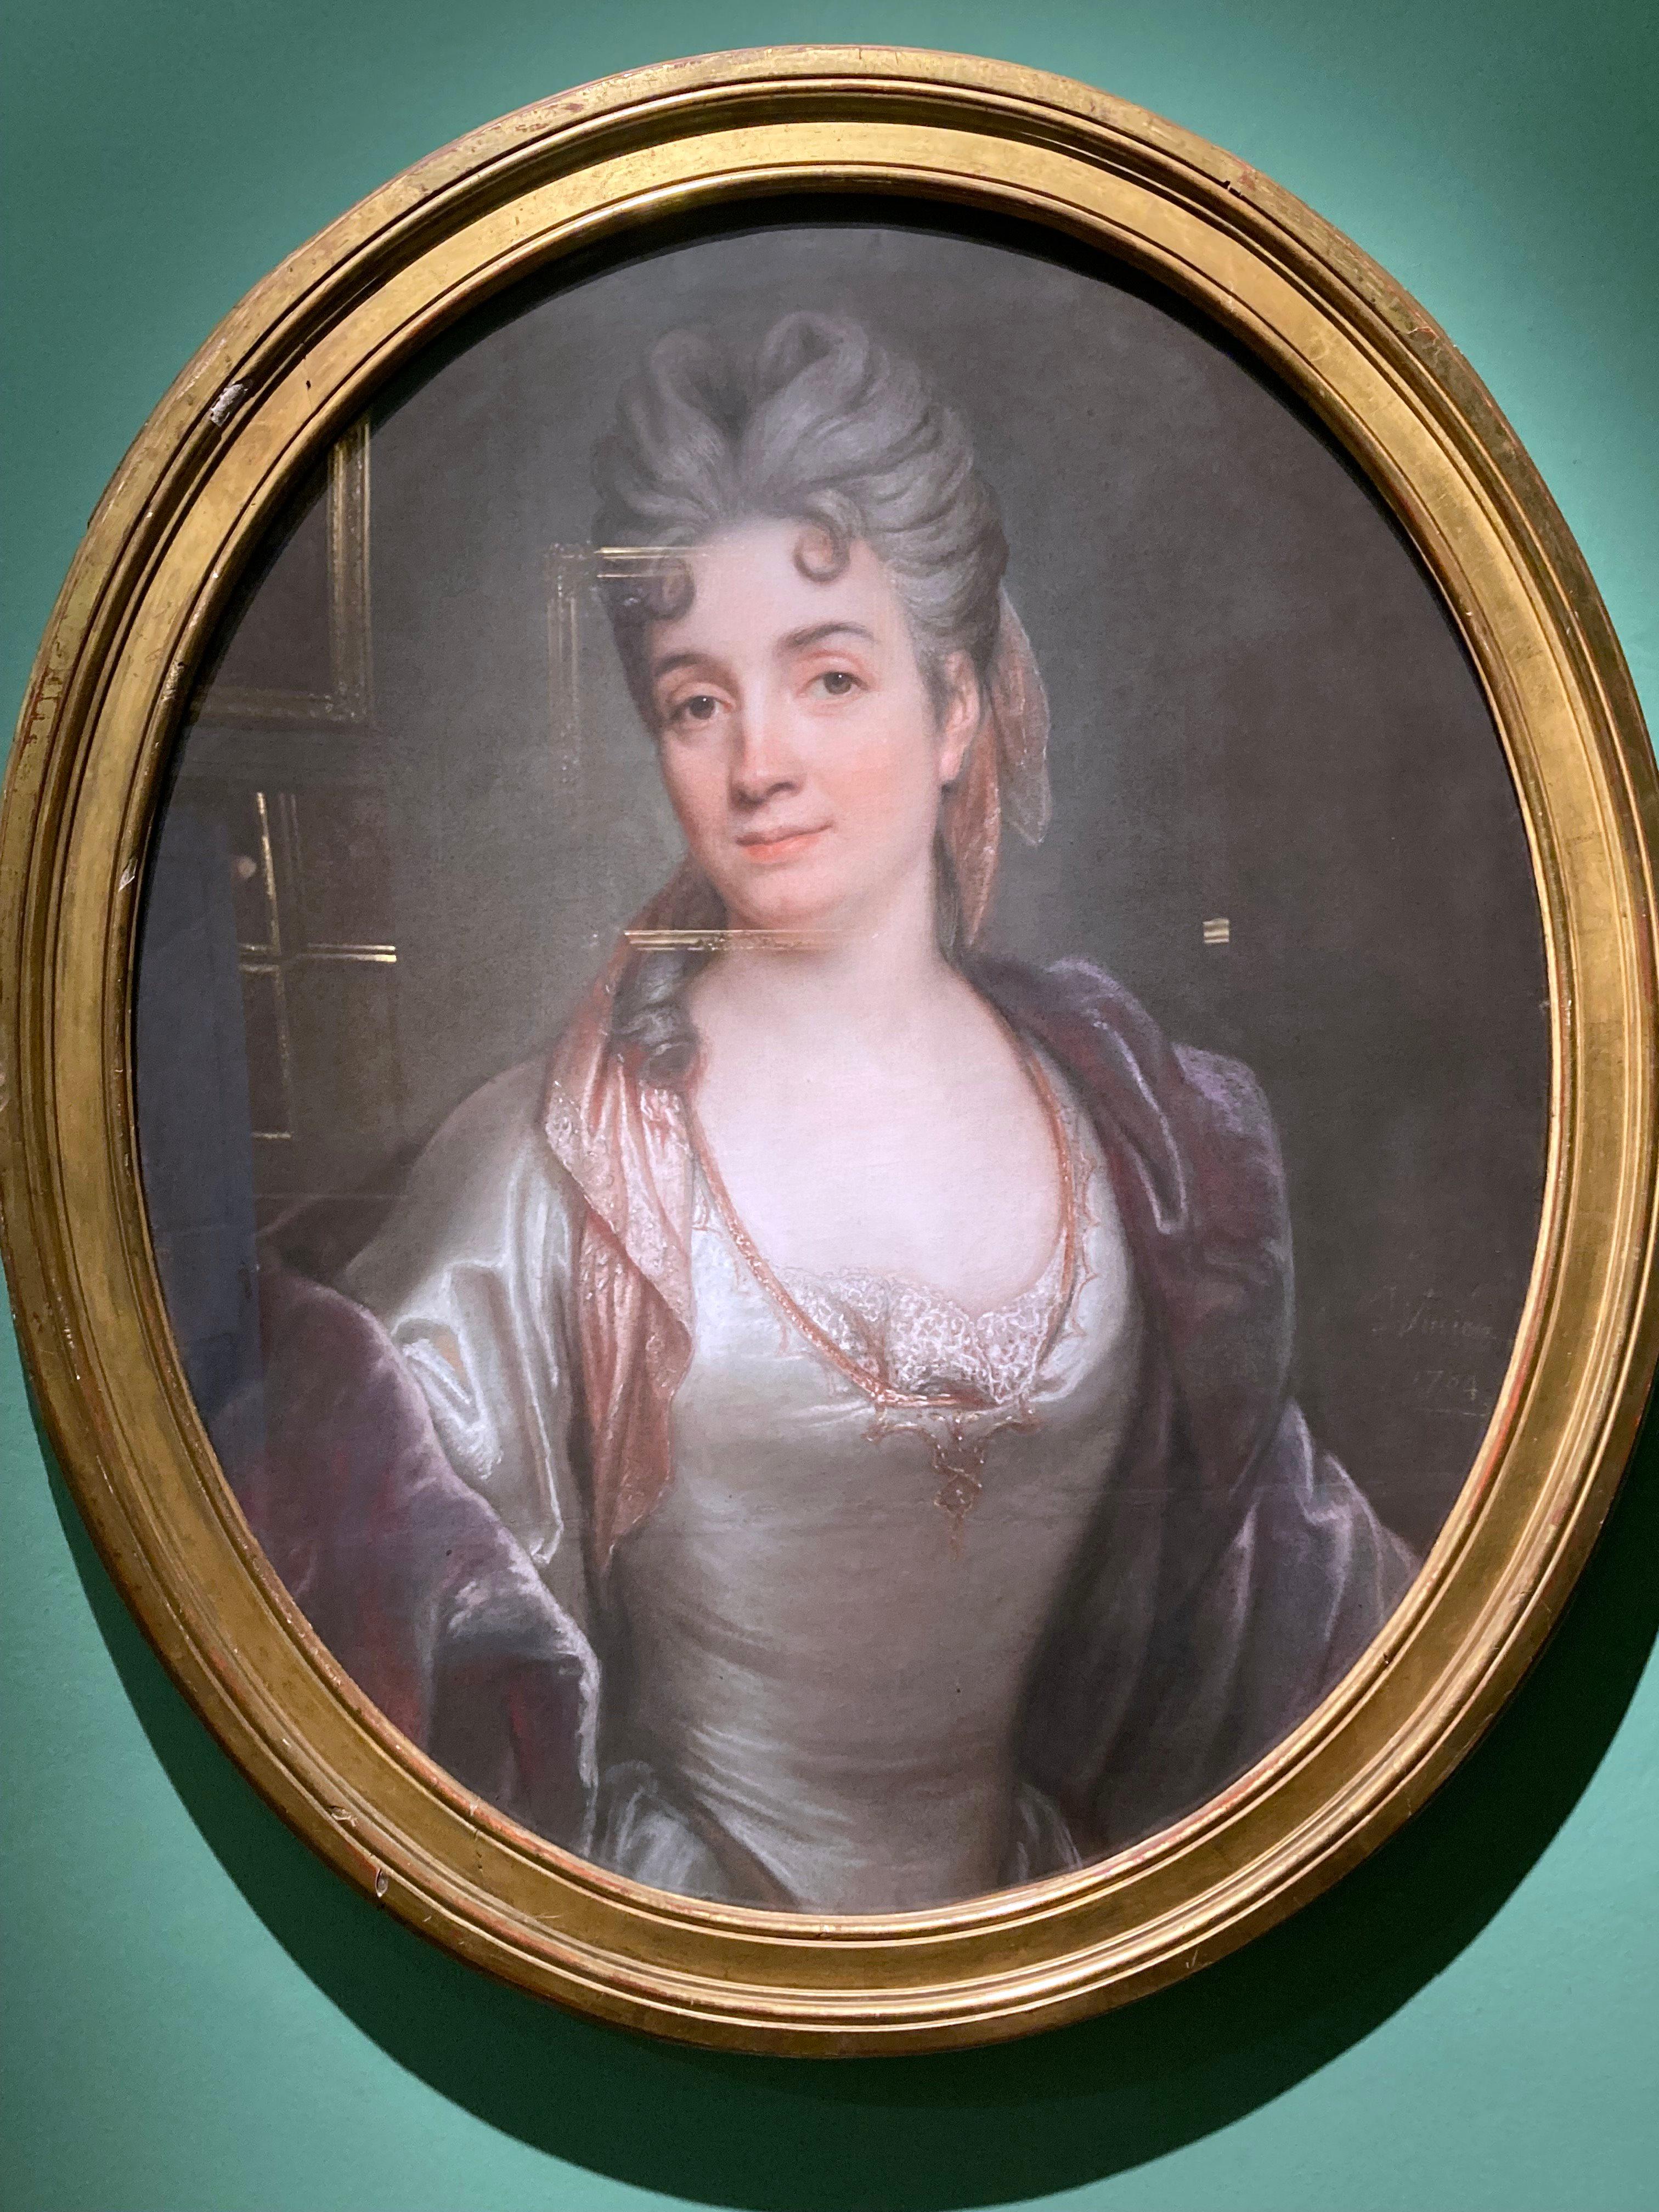 Das Porträt zeigt Frau Silvestre. 
Silvestre wurde in Paris geboren und war die Tochter von Charles-Antoine Hérault und seiner Frau Marie-Geneviève, die ihre ersten Lehrer waren. Im Jahr 1706 heiratete sie den Maler Louis de Silvestre und zog mit